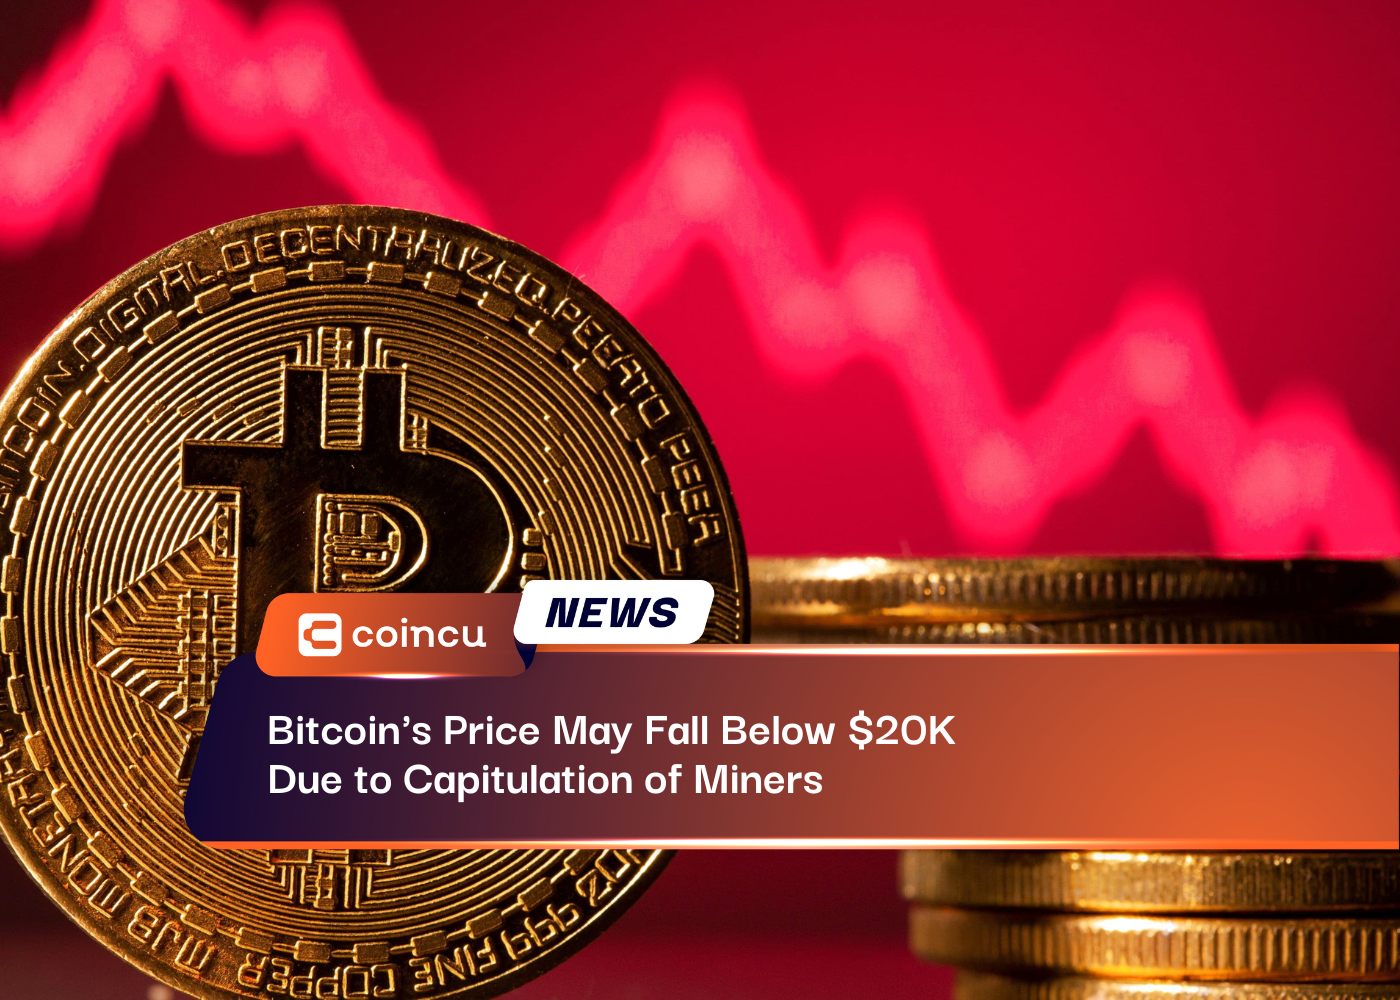 O preço do Bitcoin pode cair abaixo de US$ 20 mil devido à capitulação dos mineradores